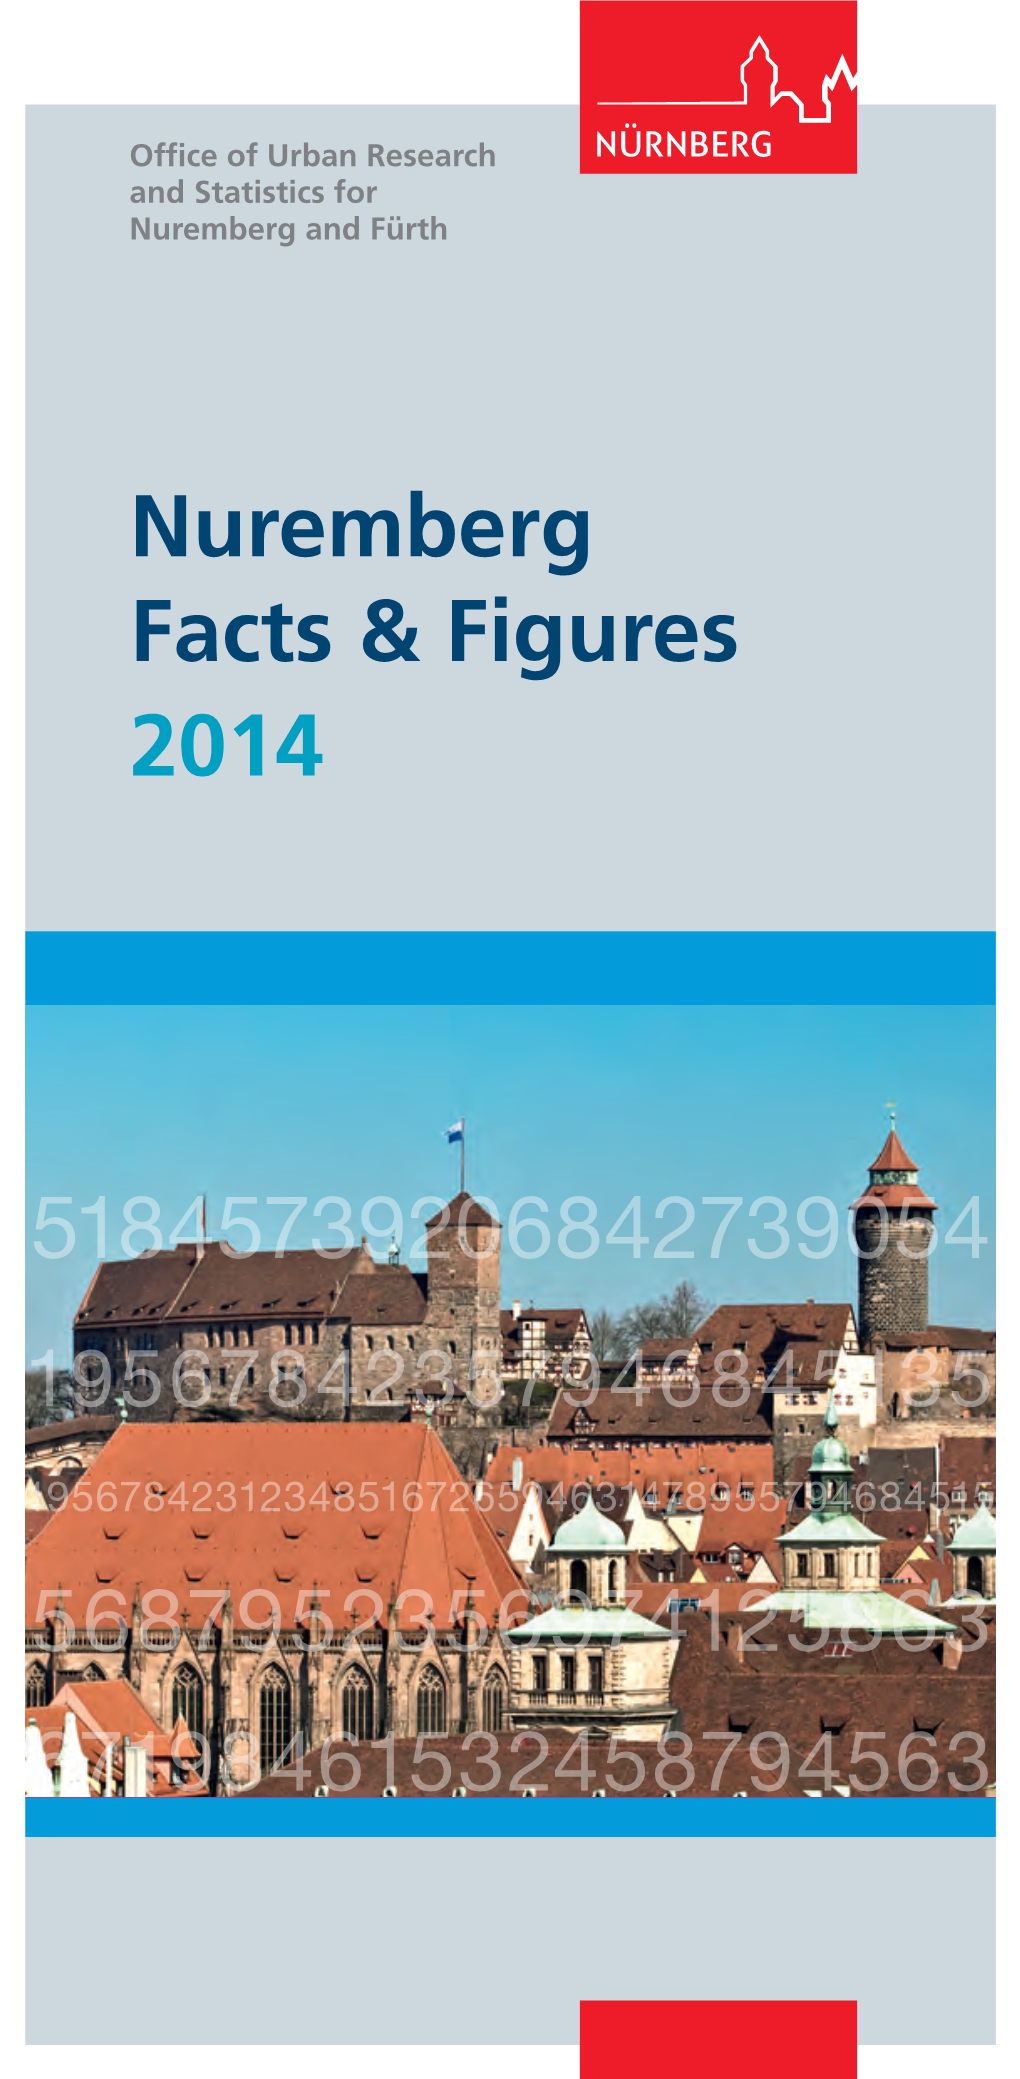 Nuremberg Facts & Figures 2014